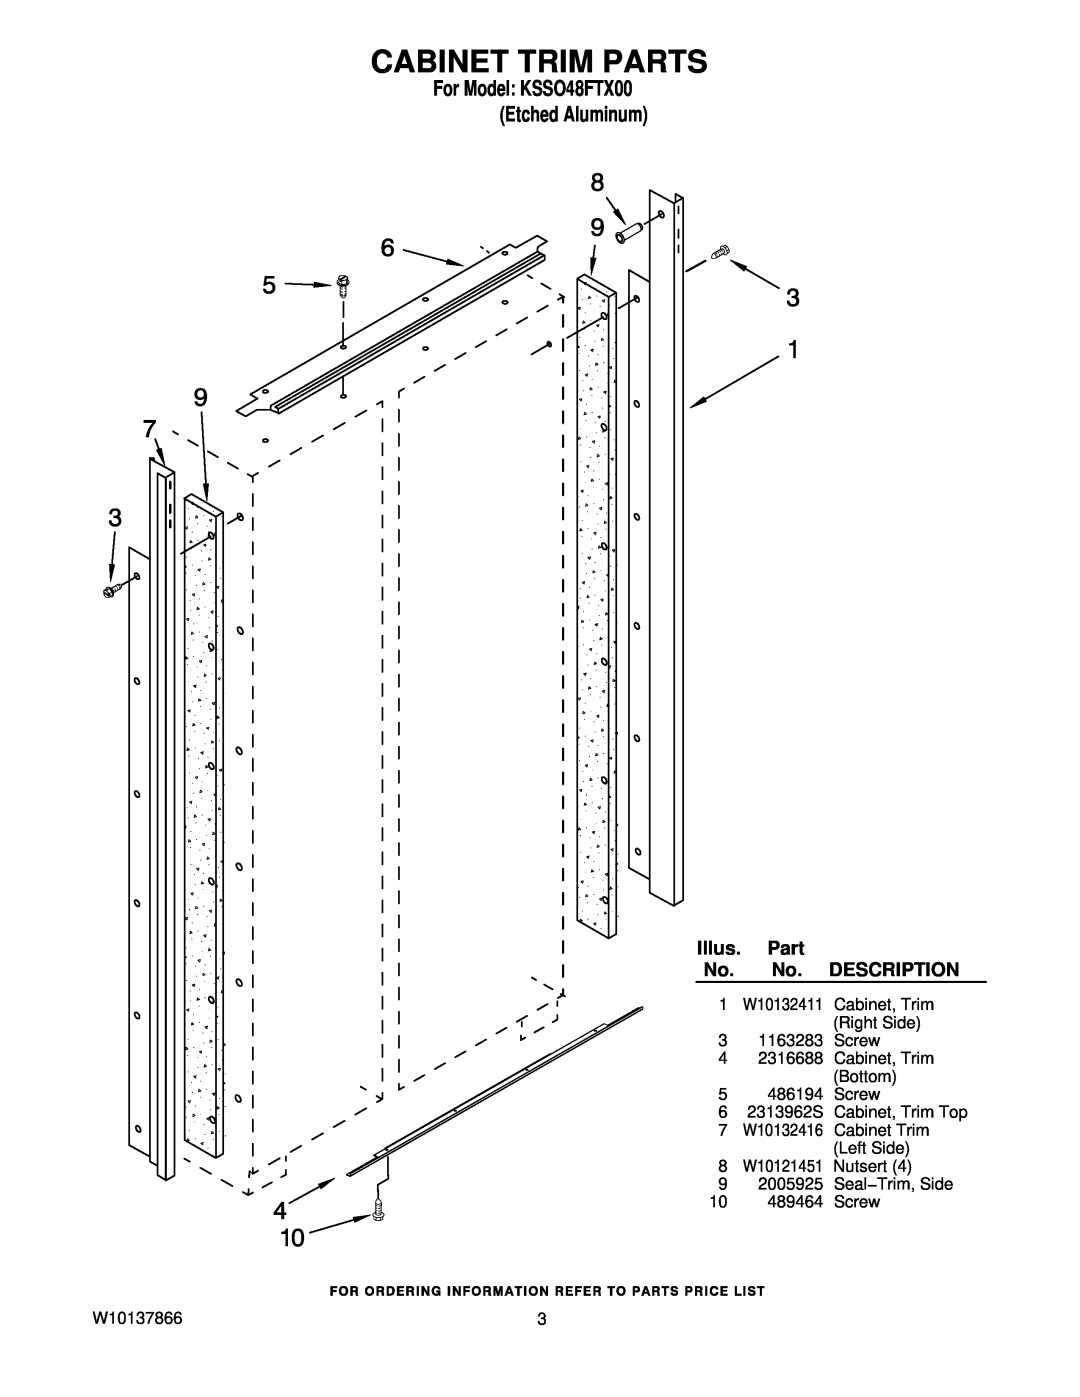 KitchenAid manual Cabinet Trim Parts, For Model KSSO48FTX00 Etched Aluminum, Illus, Description 